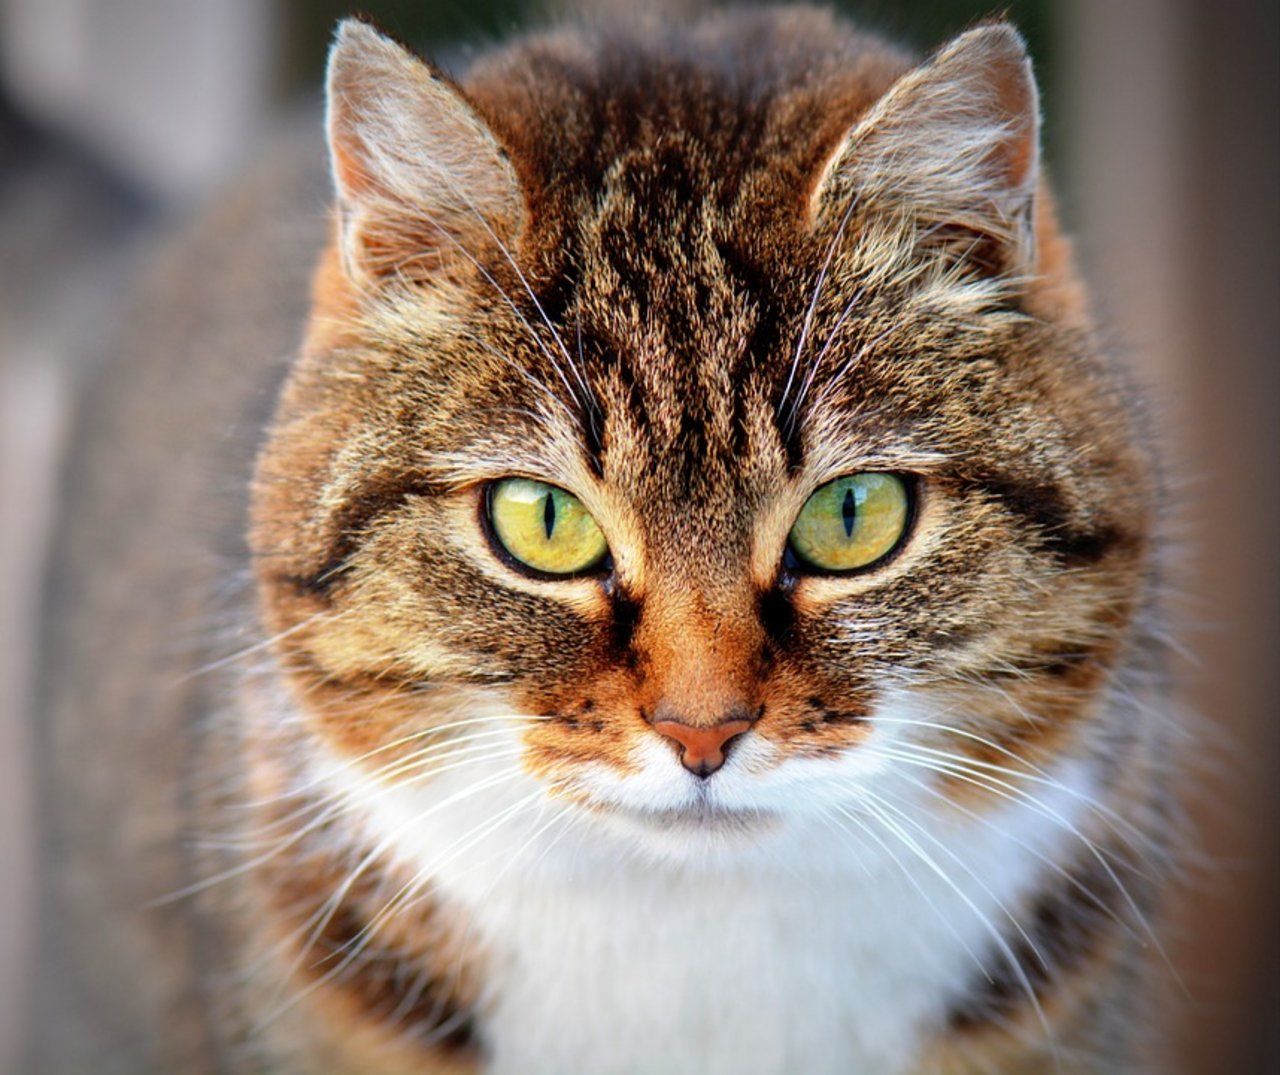 Katzen vermehren sich schnell, wenn man sie lässt. (Bild Pixabay)